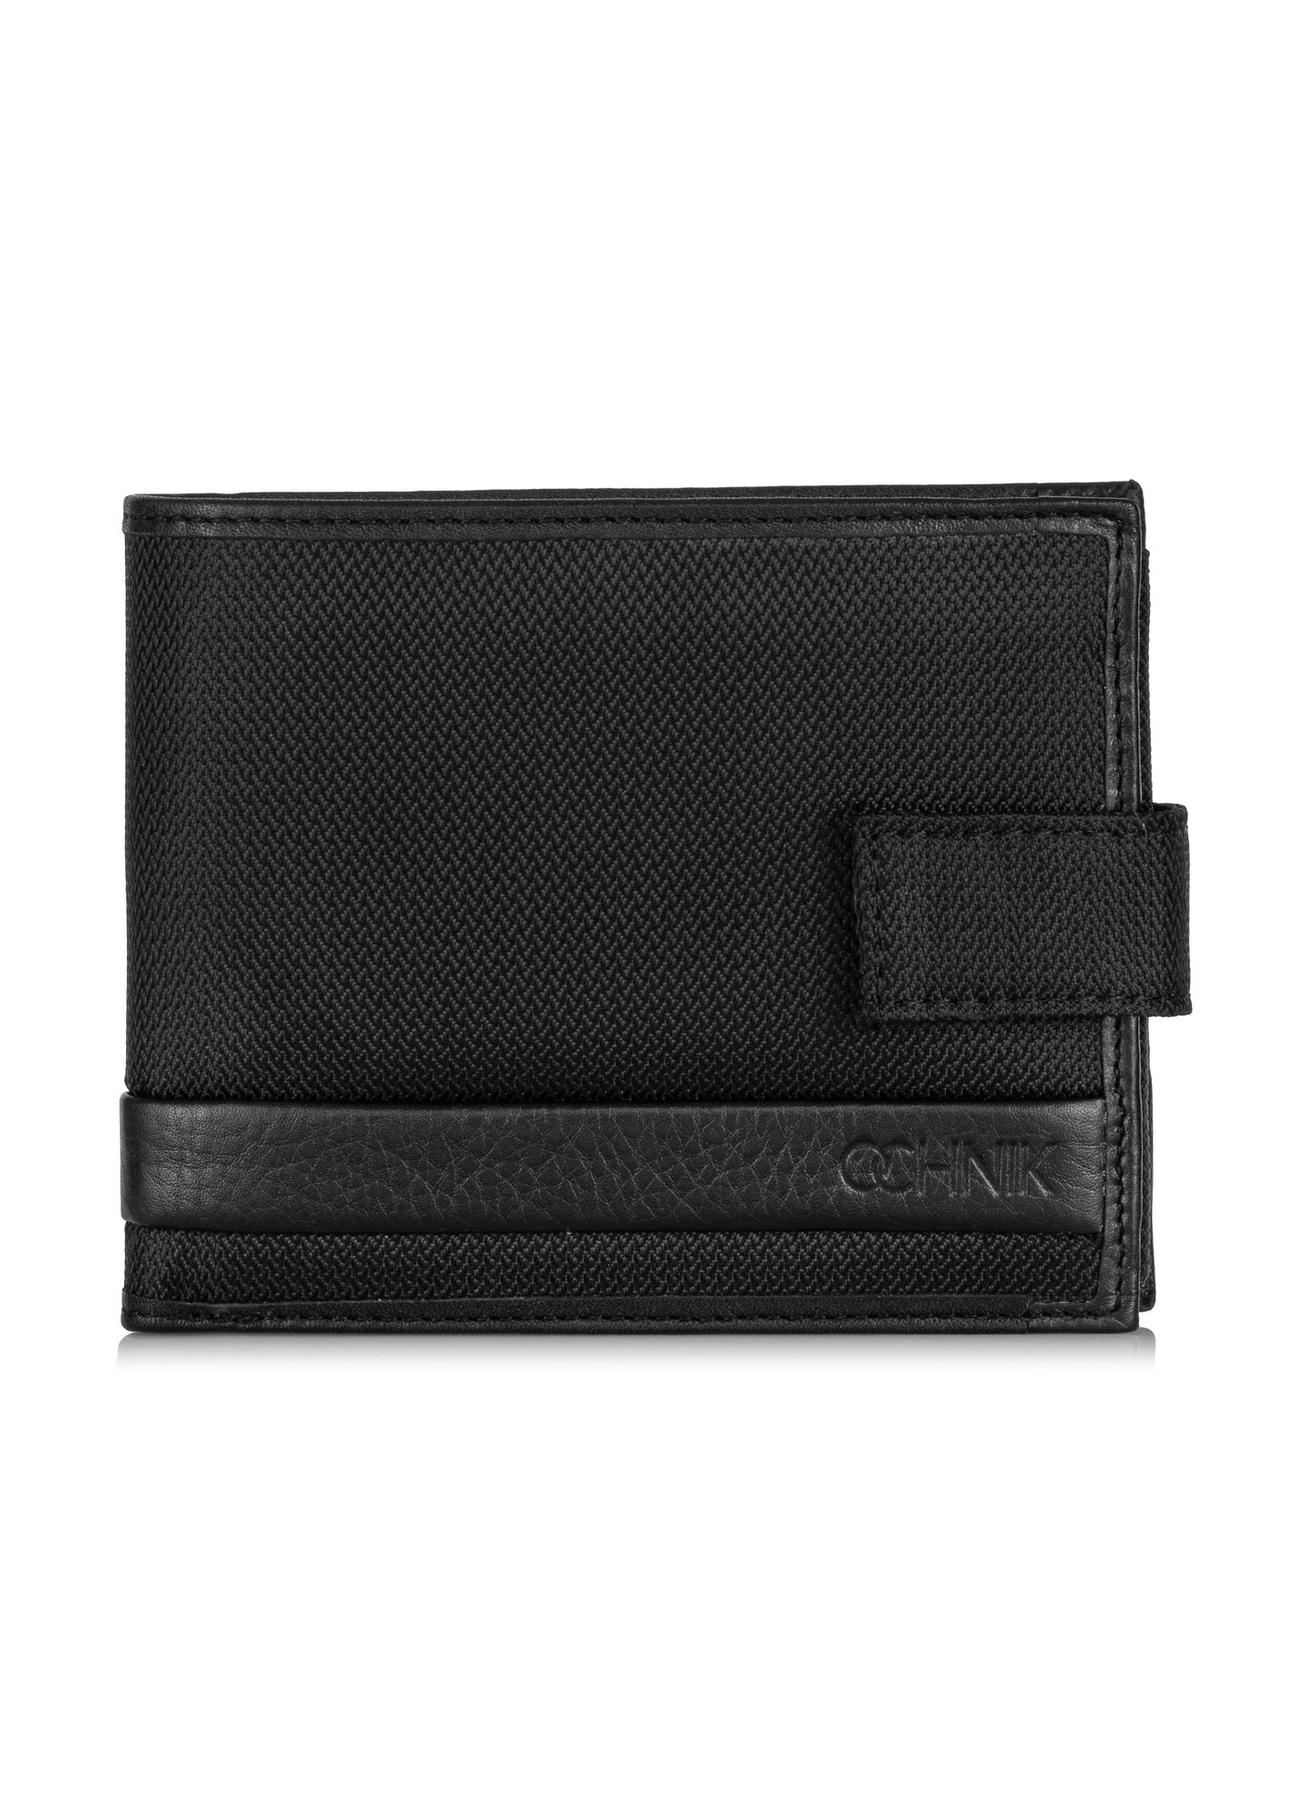 Czarny rozkładany zapinany portfel męski  PORMN-0016-99(Z23)